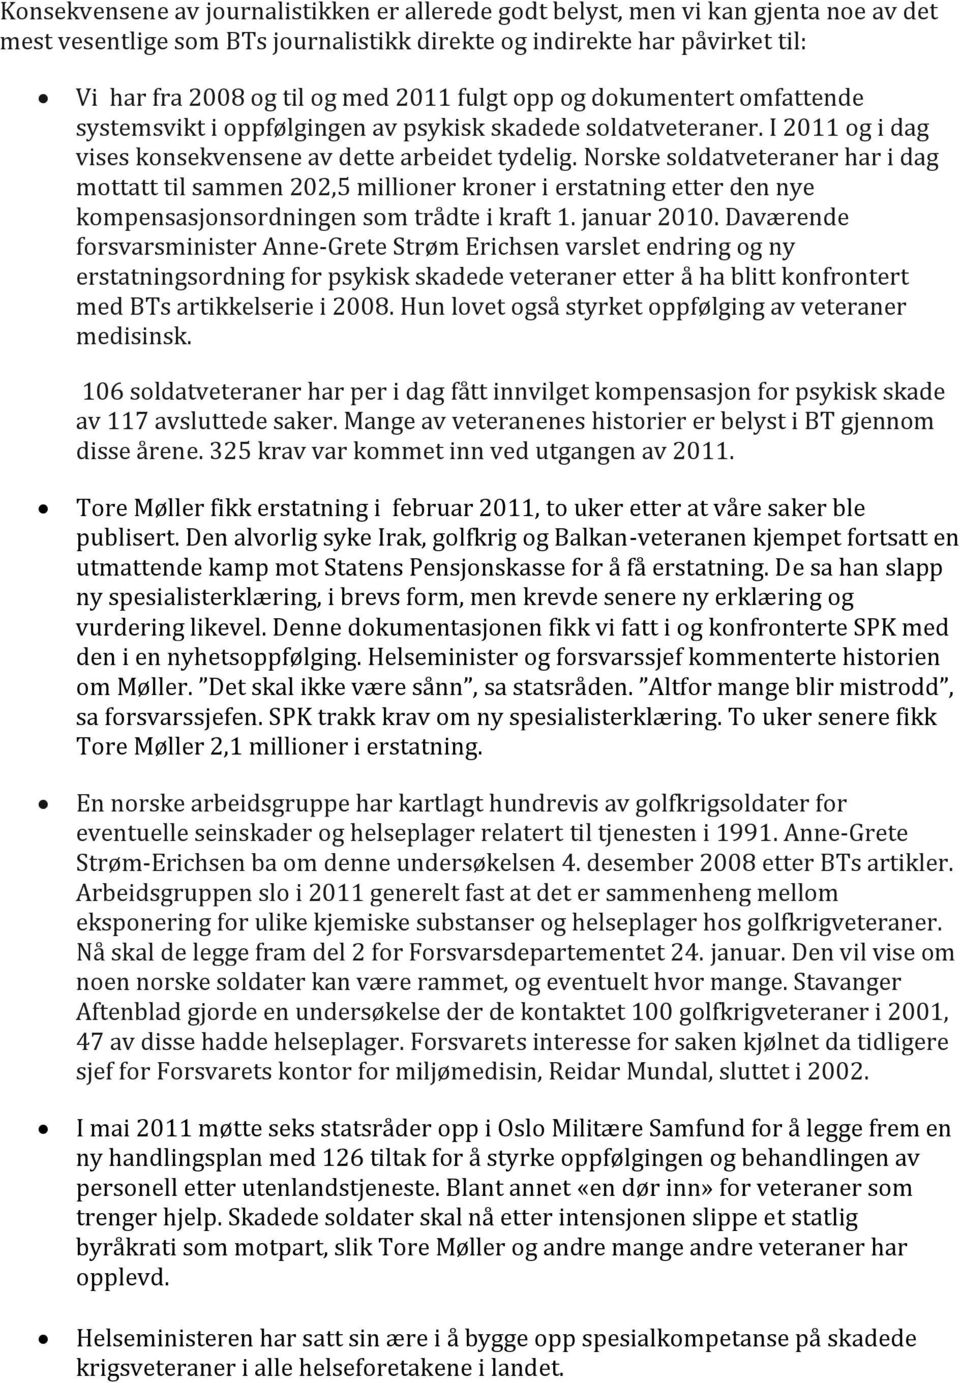 Norske soldatveteraner har i dag mottatt til sammen 202,5 millioner kroner i erstatning etter den nye kompensasjonsordningen som trådte i kraft 1. januar 2010.